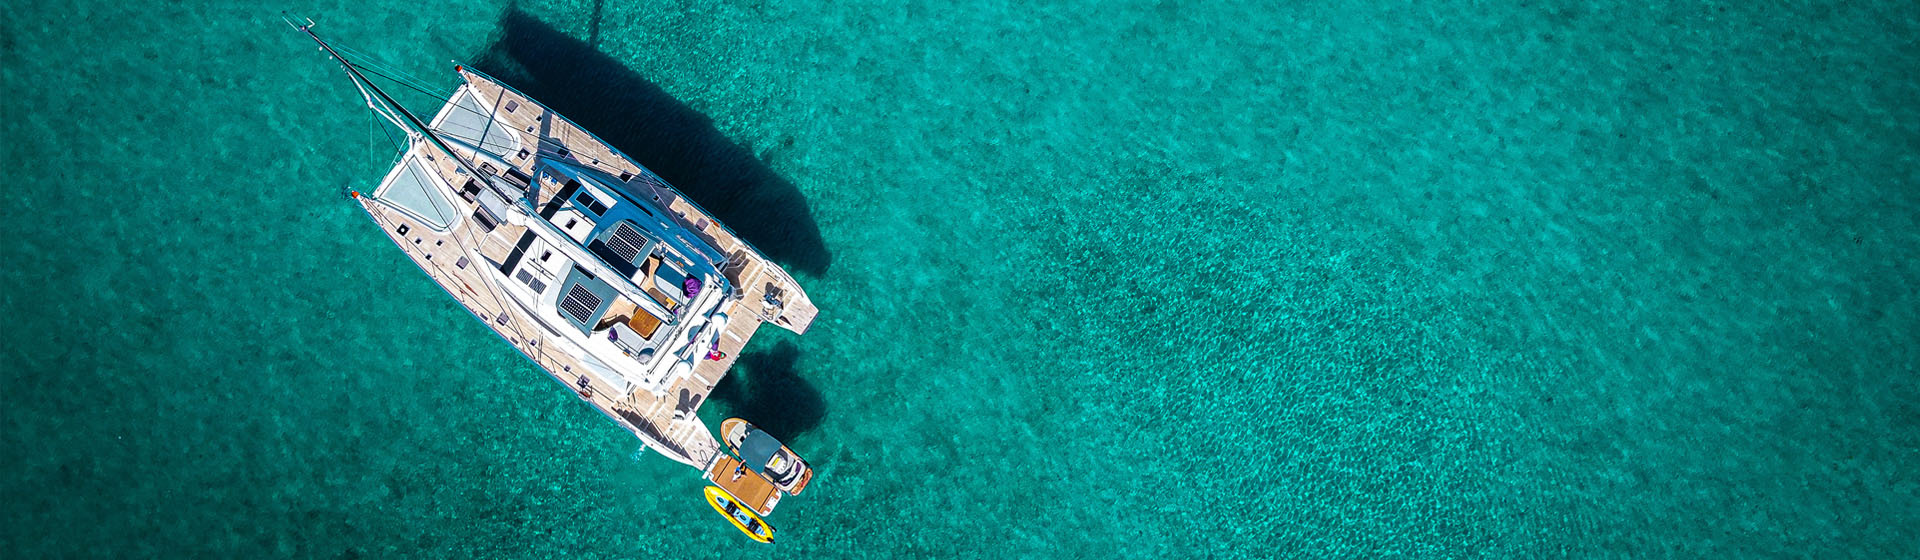 Blick von oben auf den Privilège Serie 740 Luxus-Katamaran auf ruhigem, tropisch blauem Wasser